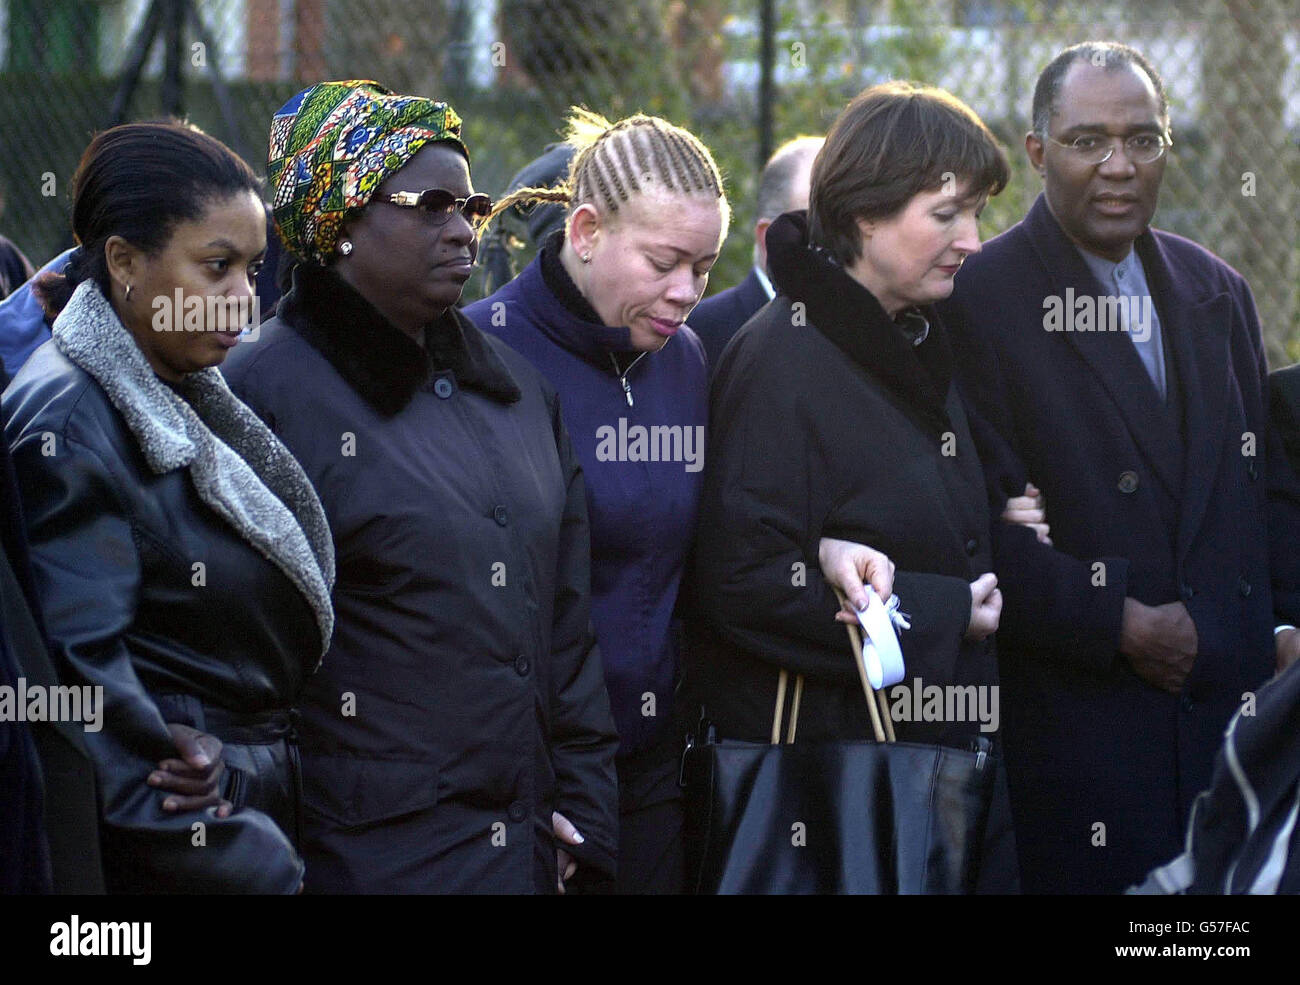 Dorcas Fáyemi, zweite Linke, Großmutter des ermordeten 10-jährigen Damilola Taylor, wird von dem lokalen Abgeordneten Harriet Harman und Trevor Phillips, dem Vorsitzenden der Greater London Authority, während eines gedenkmarsches durch Peckham zu seinen Ehren begleitet. * dreihundert Menschen kamen zum marsch. Stockfoto